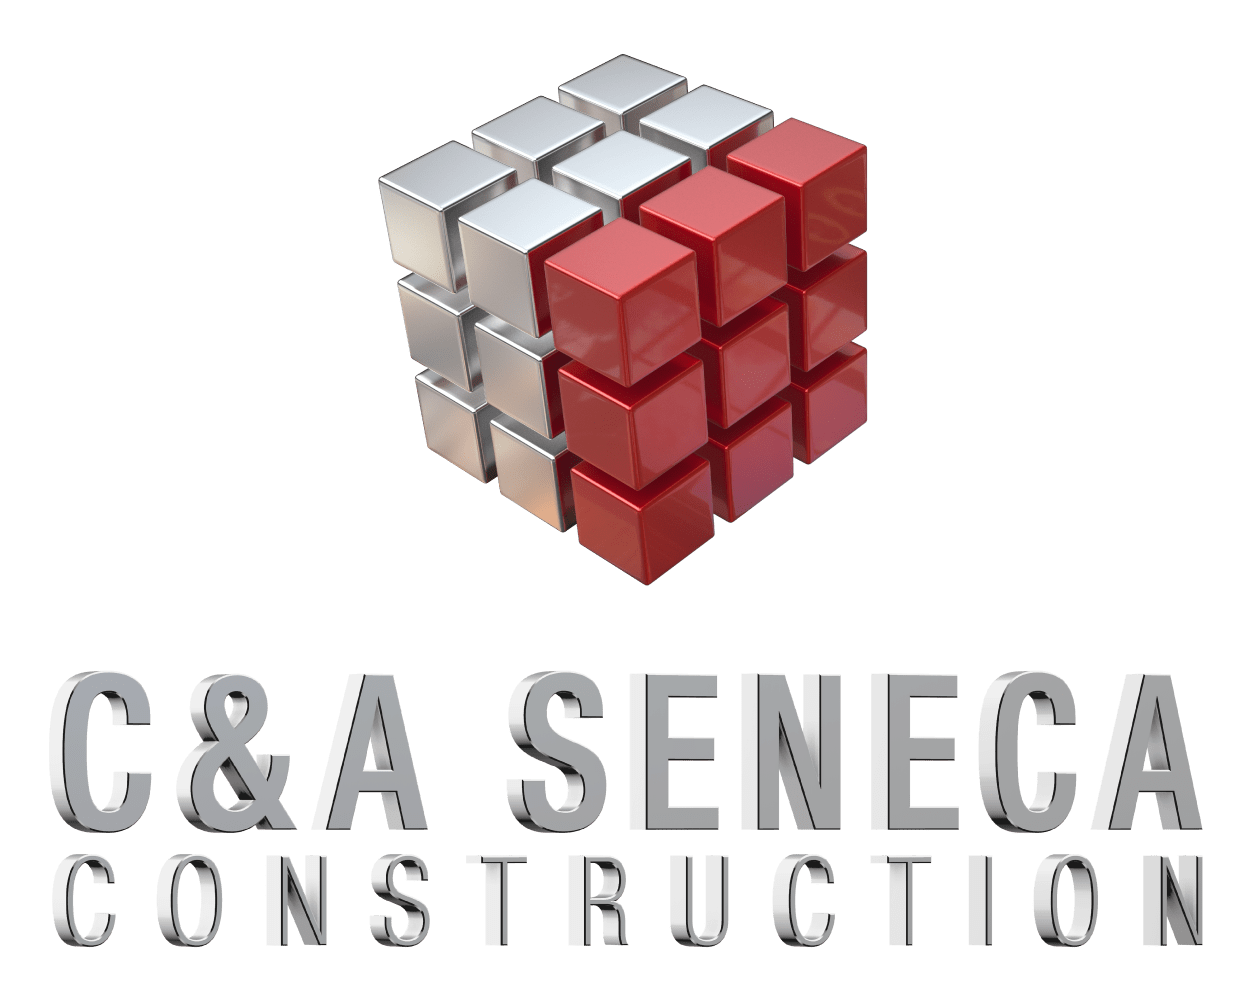 C&A Seneca Construction 191